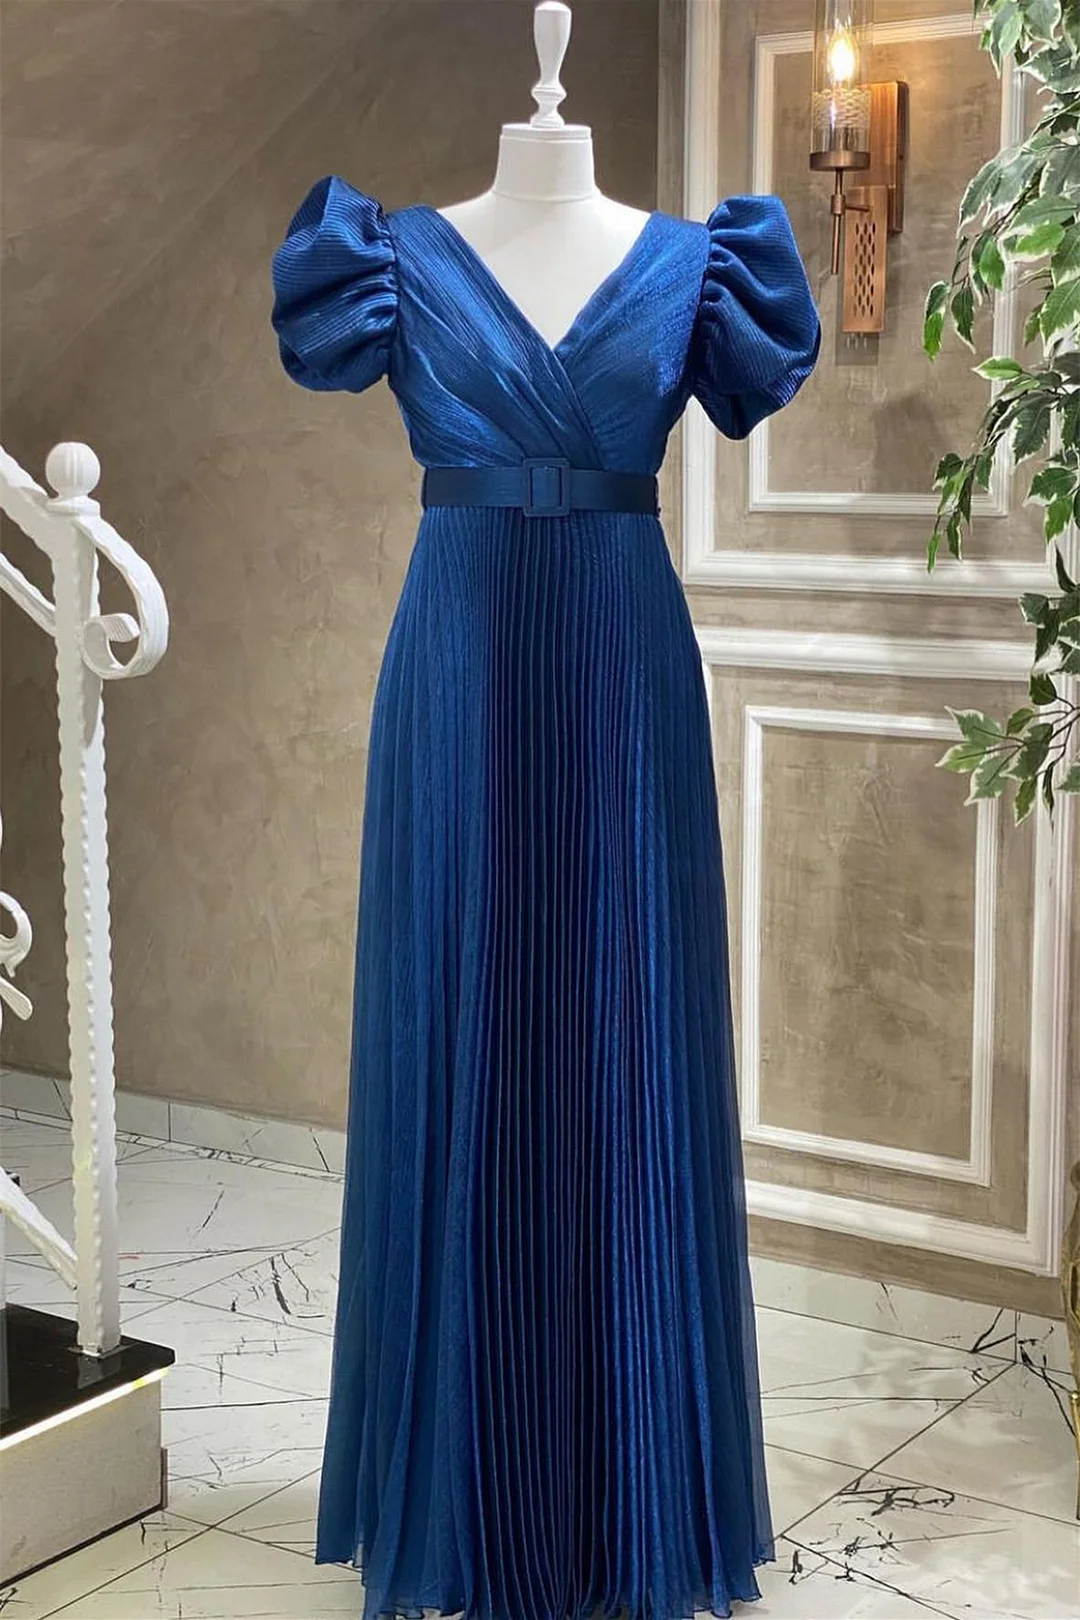 Daisda Evening Dress Short Sleeves With Belt Online Blue Royal V-Neck